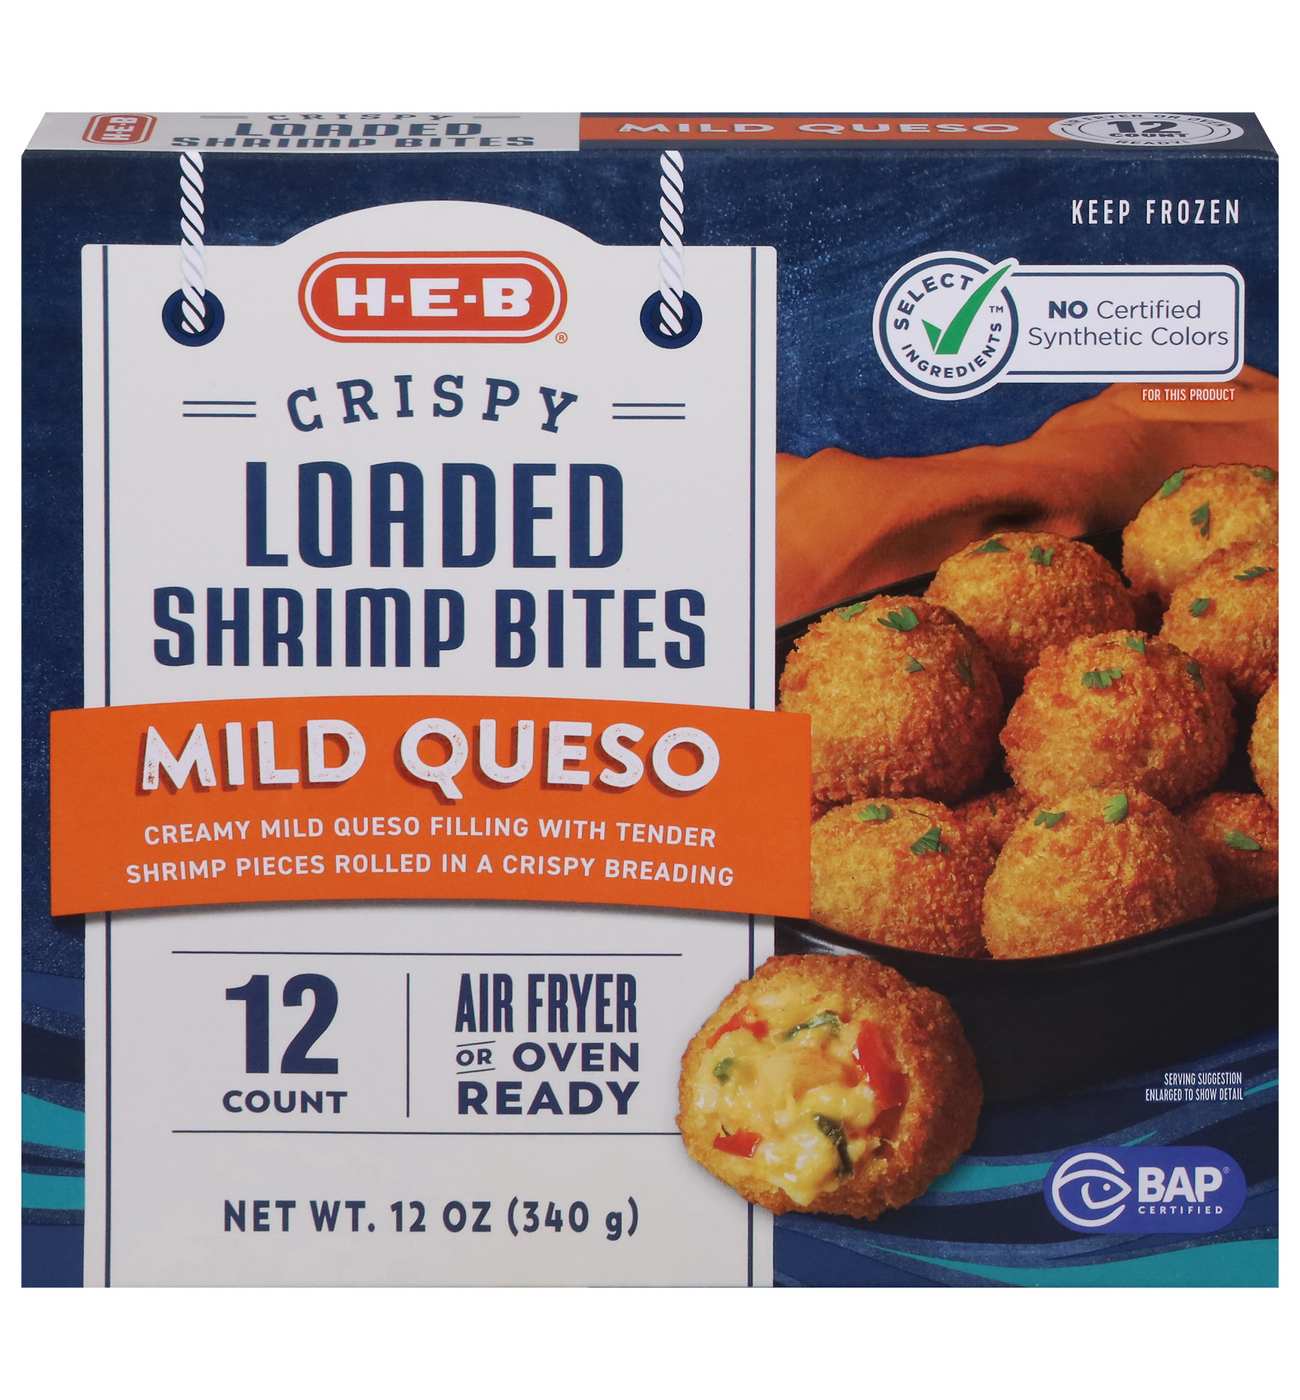 H-E-B Frozen Crispy Loaded Shrimp Bites – Mild Queso; image 1 of 2